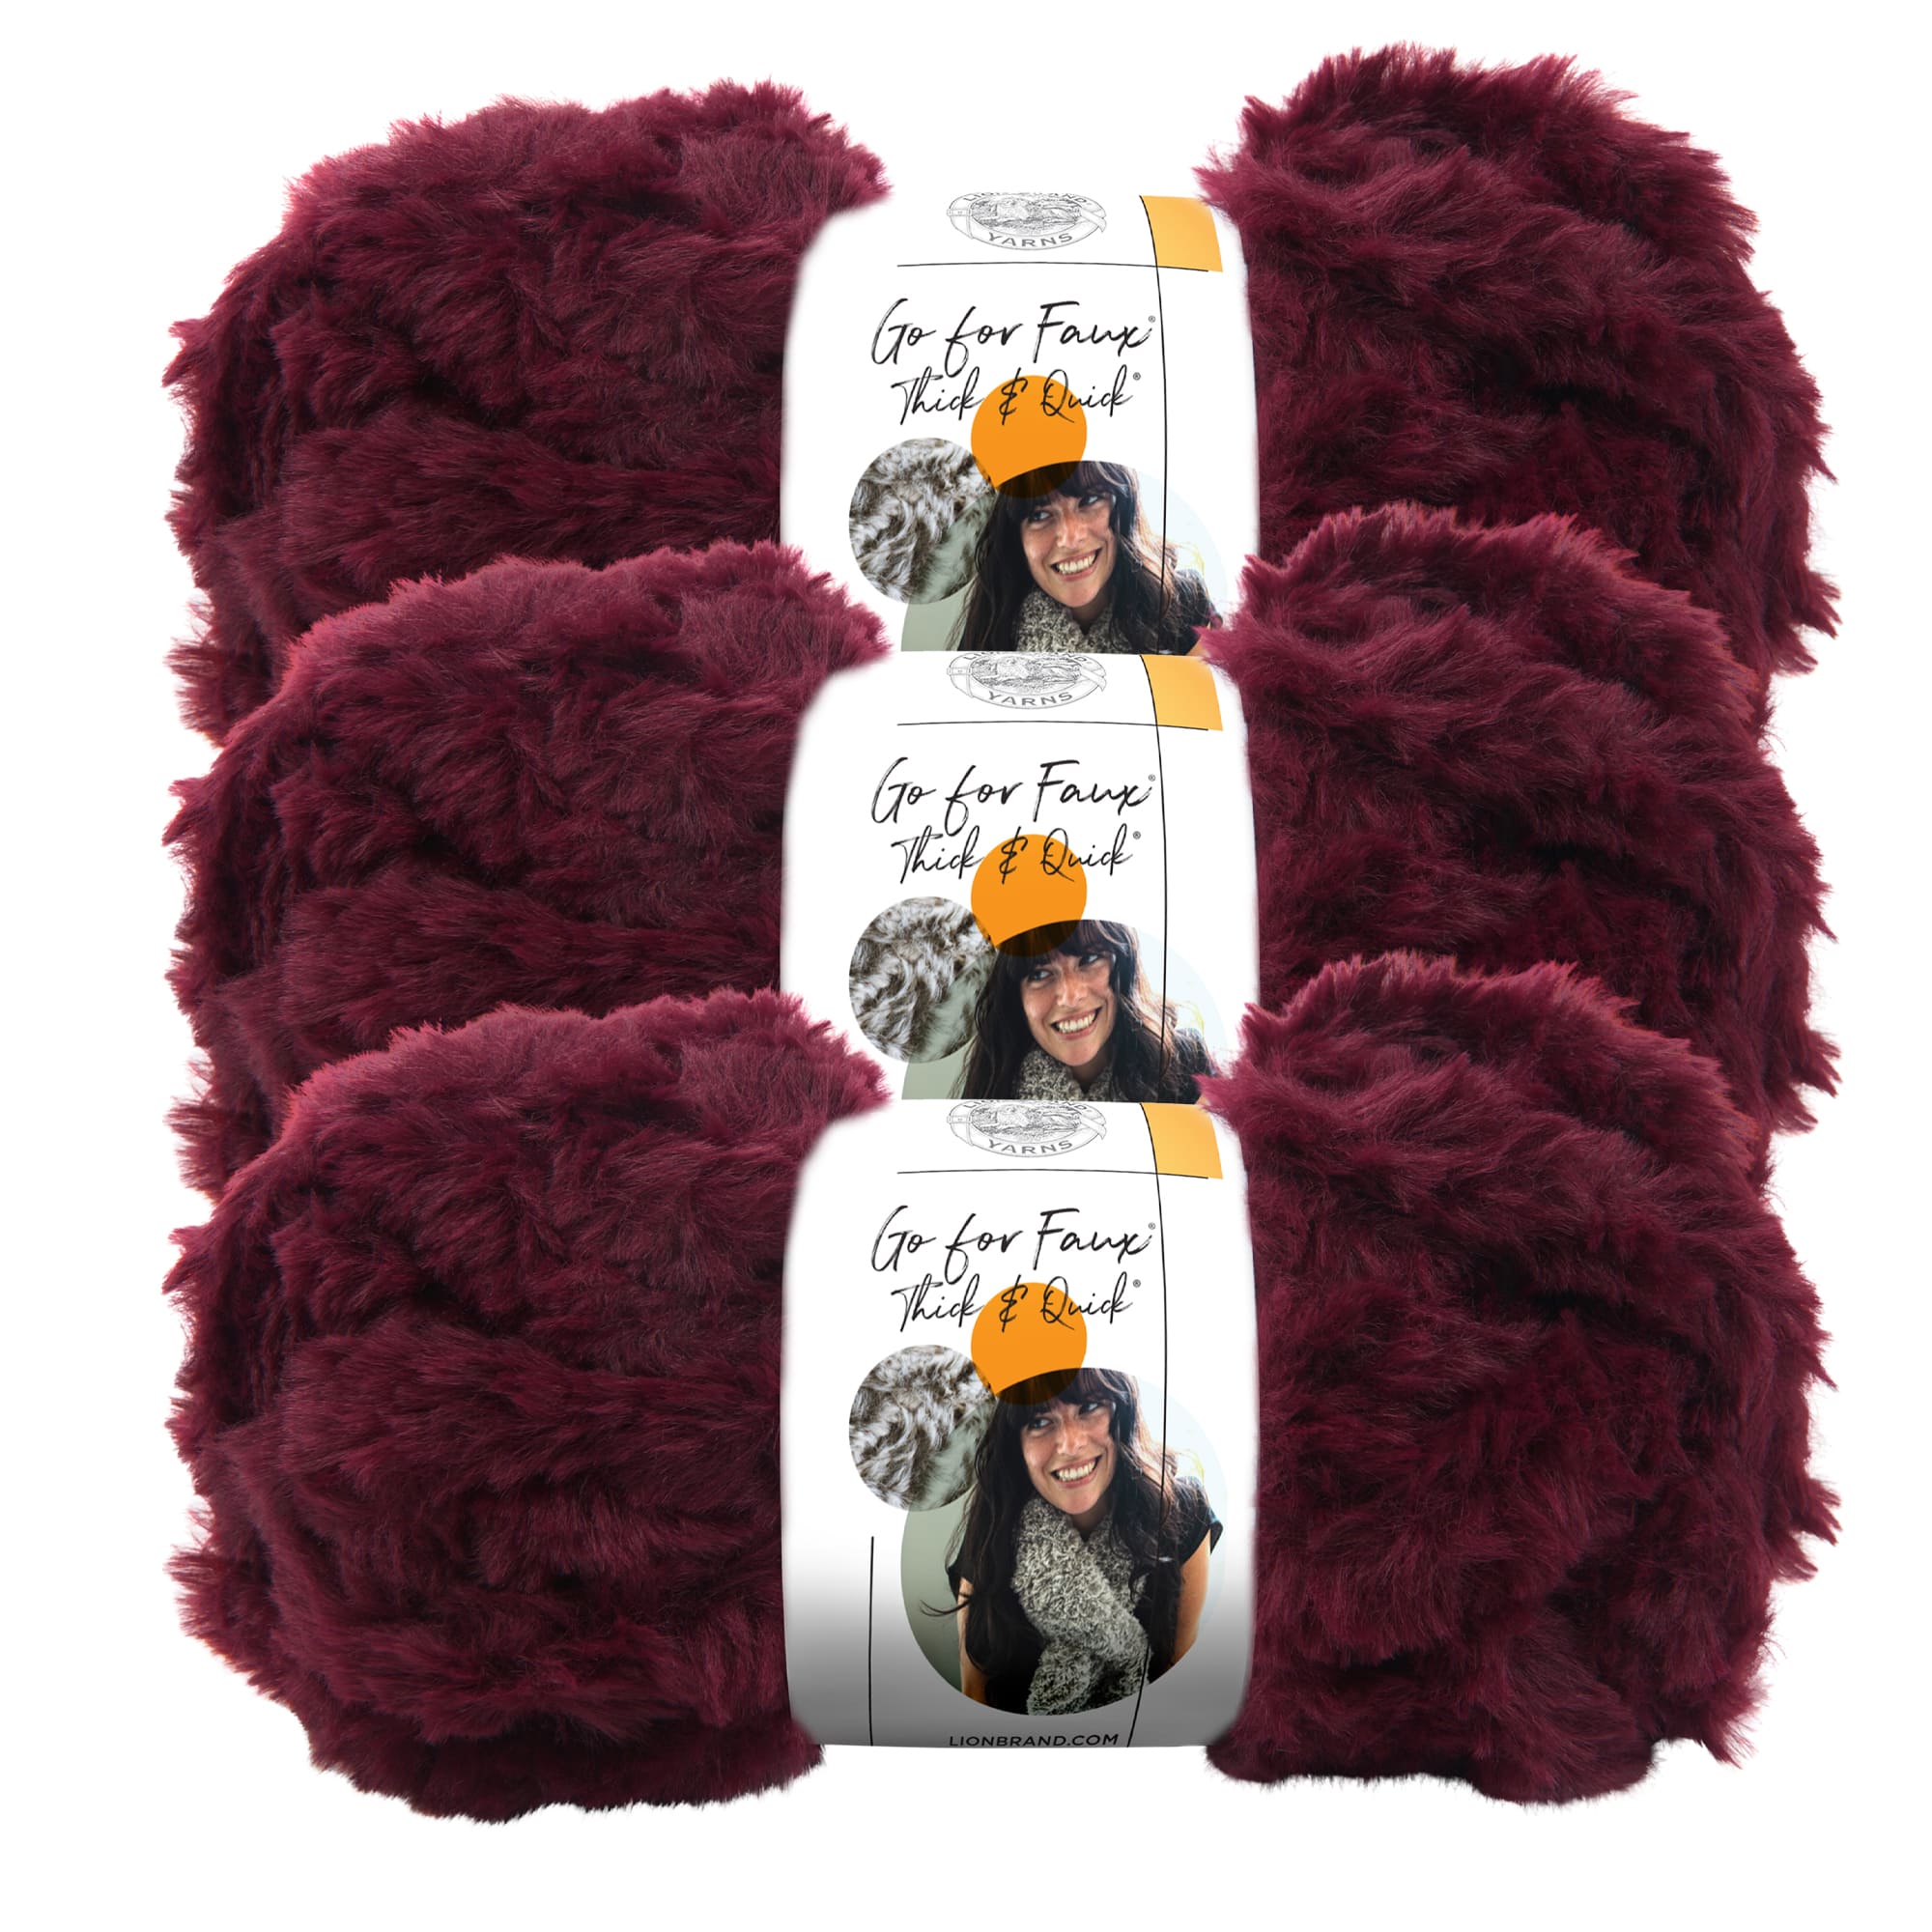 3 Skeins Per Pack Each 150 Grams Faux Fur Yarn Thick Wool Hand